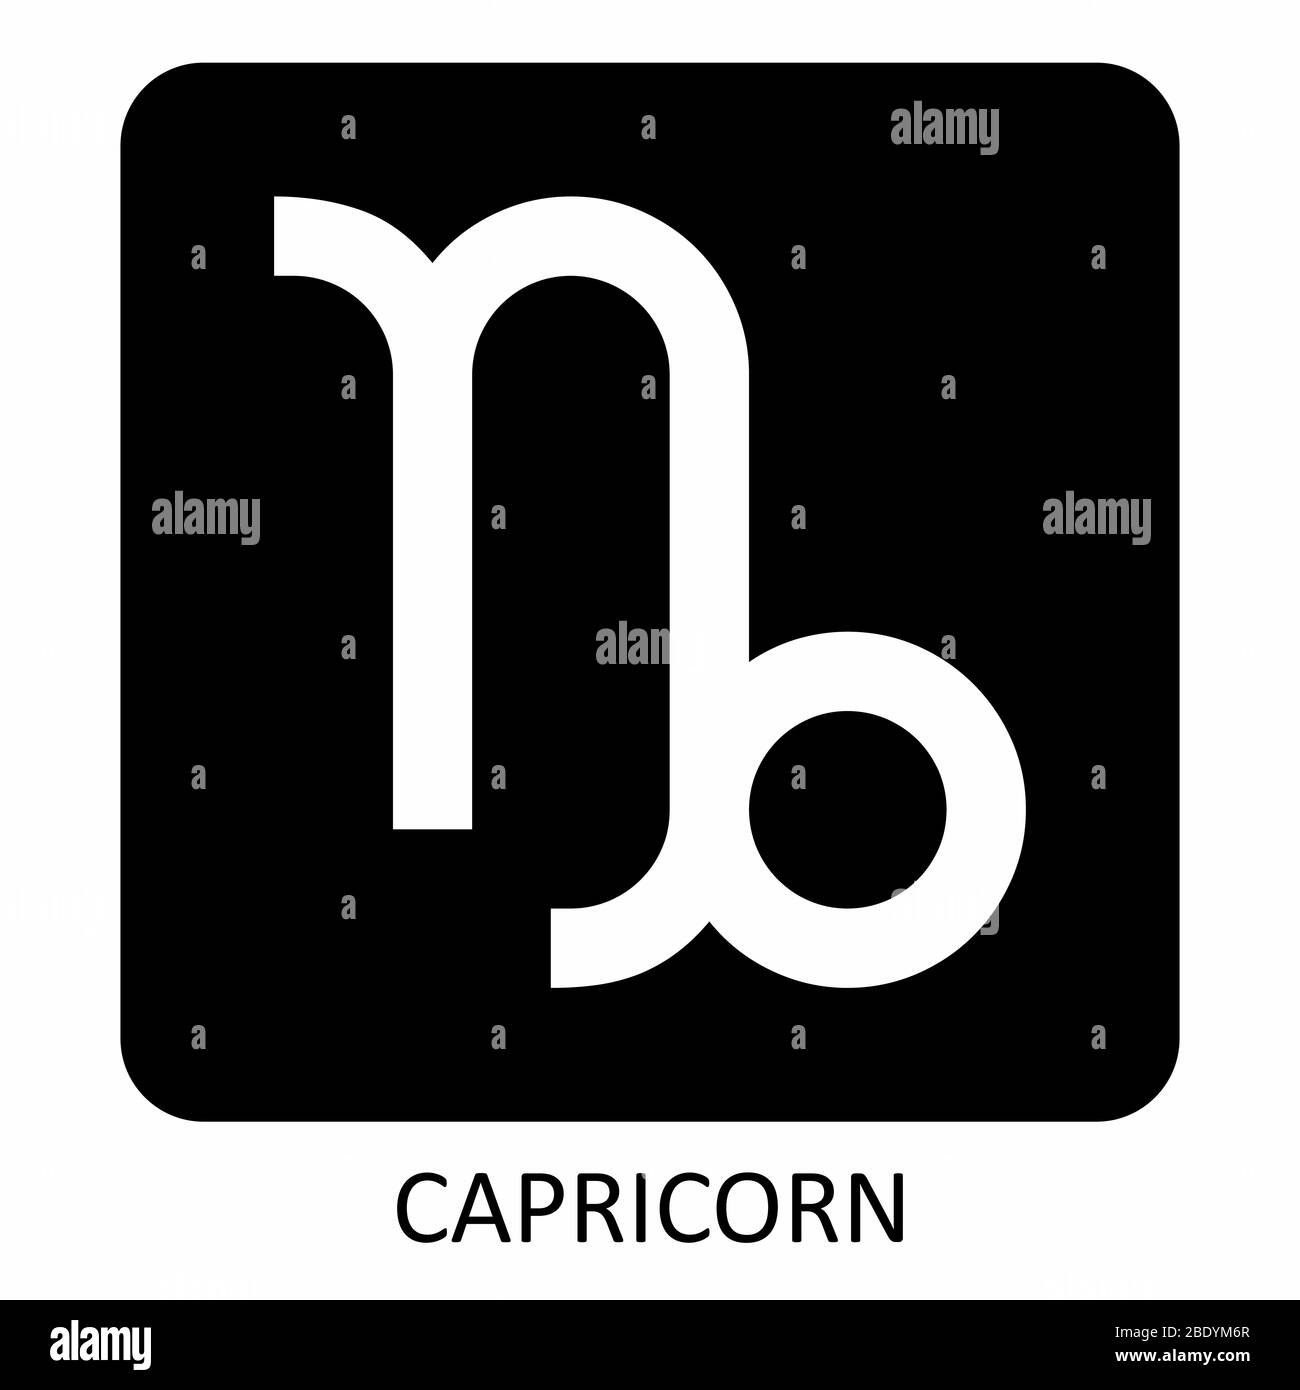 Capricorn zodiac sign icon Stock Vector